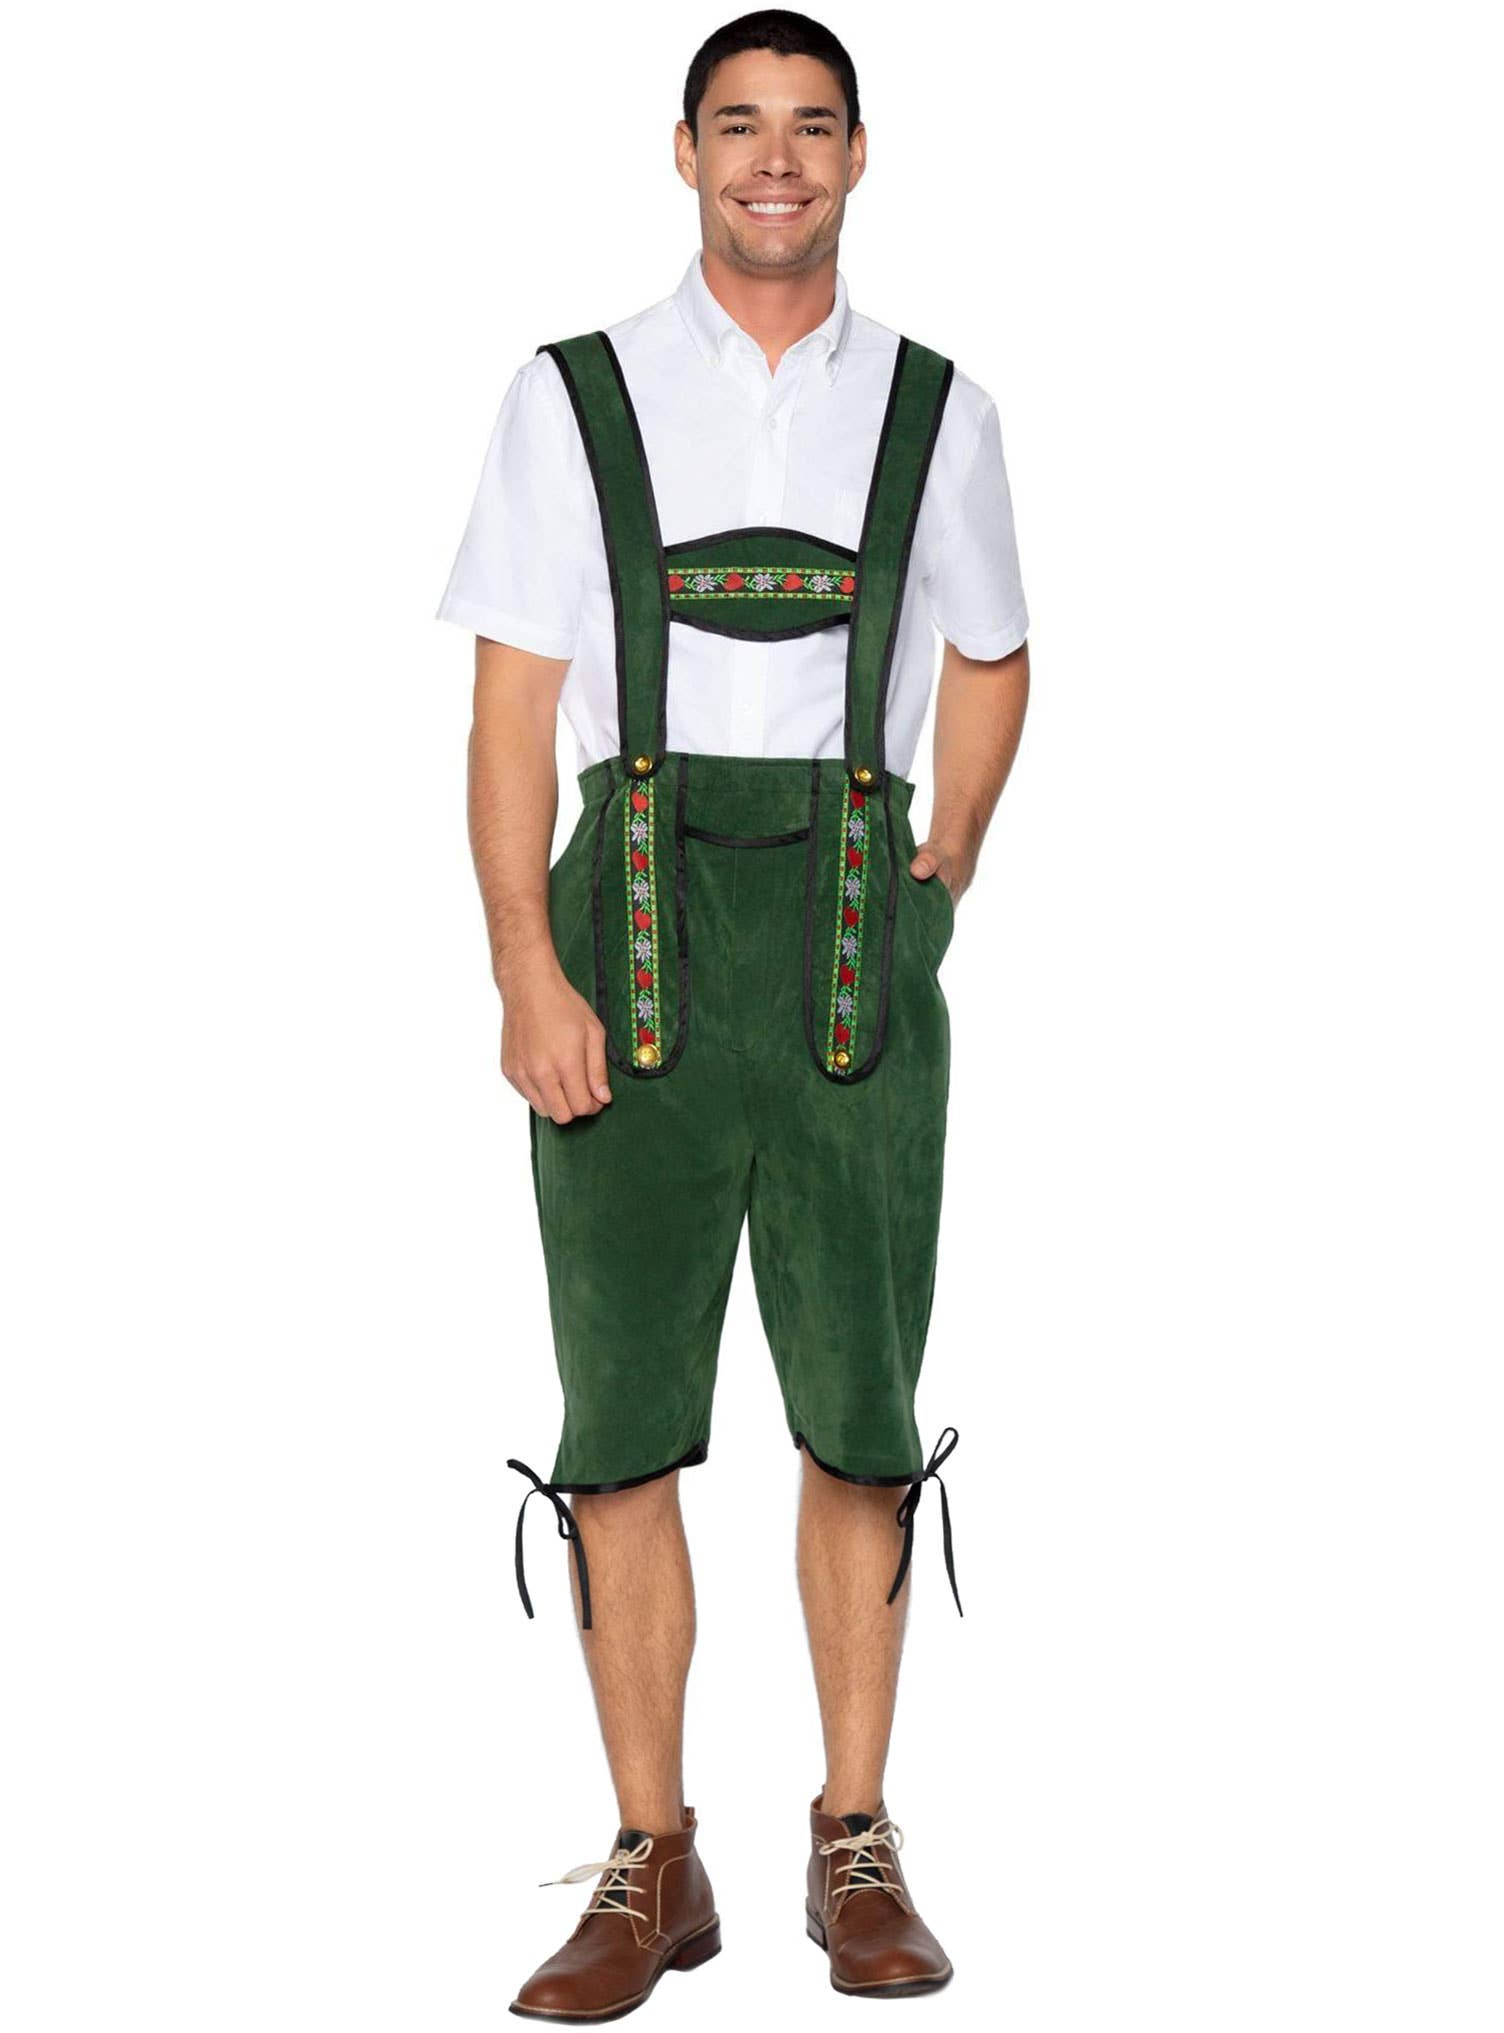 Green Lederhosen Oktoberfest Costume for Men - Main Image